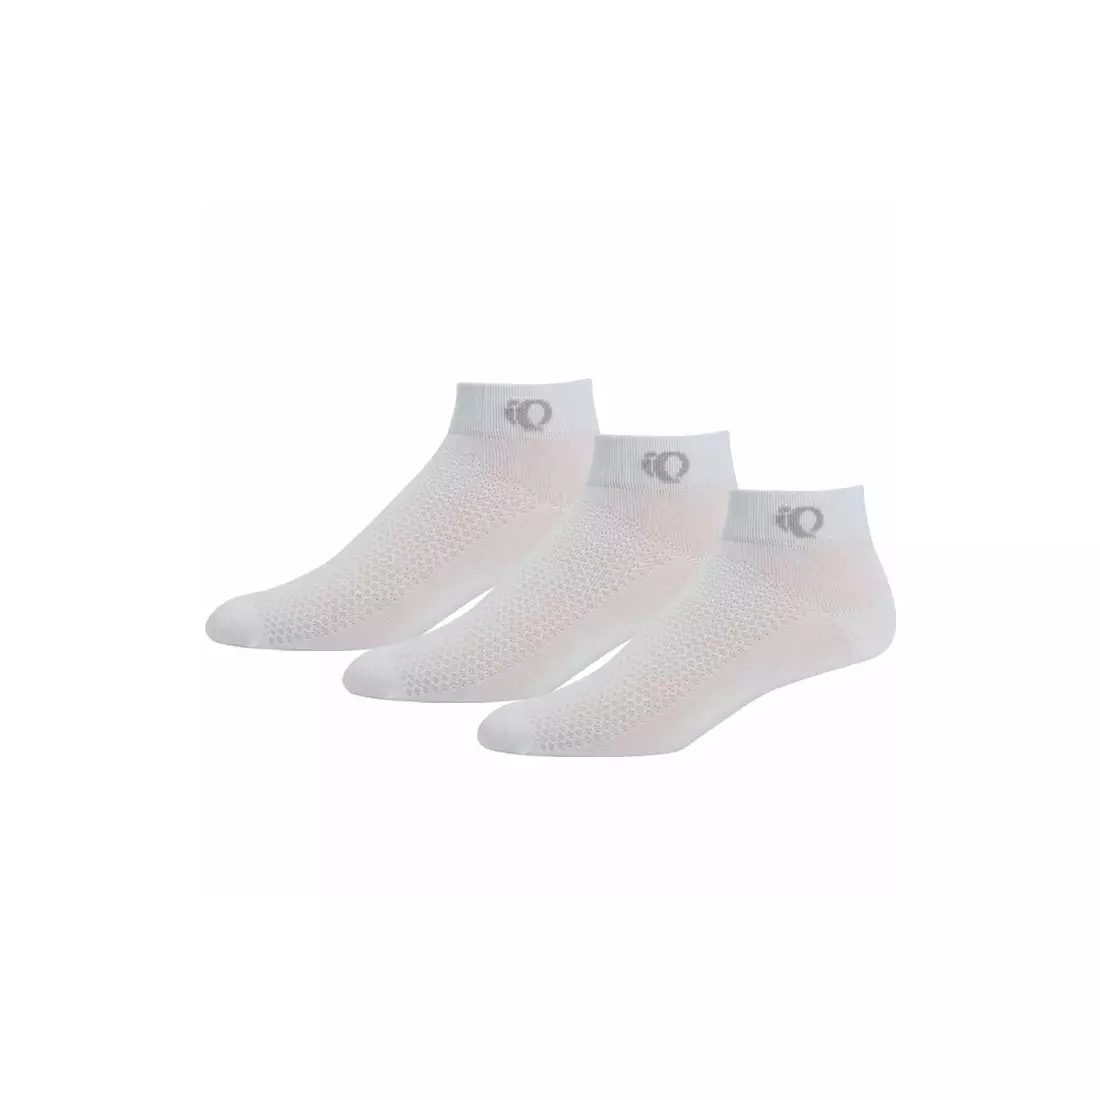 PEARL IZUMI - ATTACK 9289-508 – sports socks, socks 3-pack